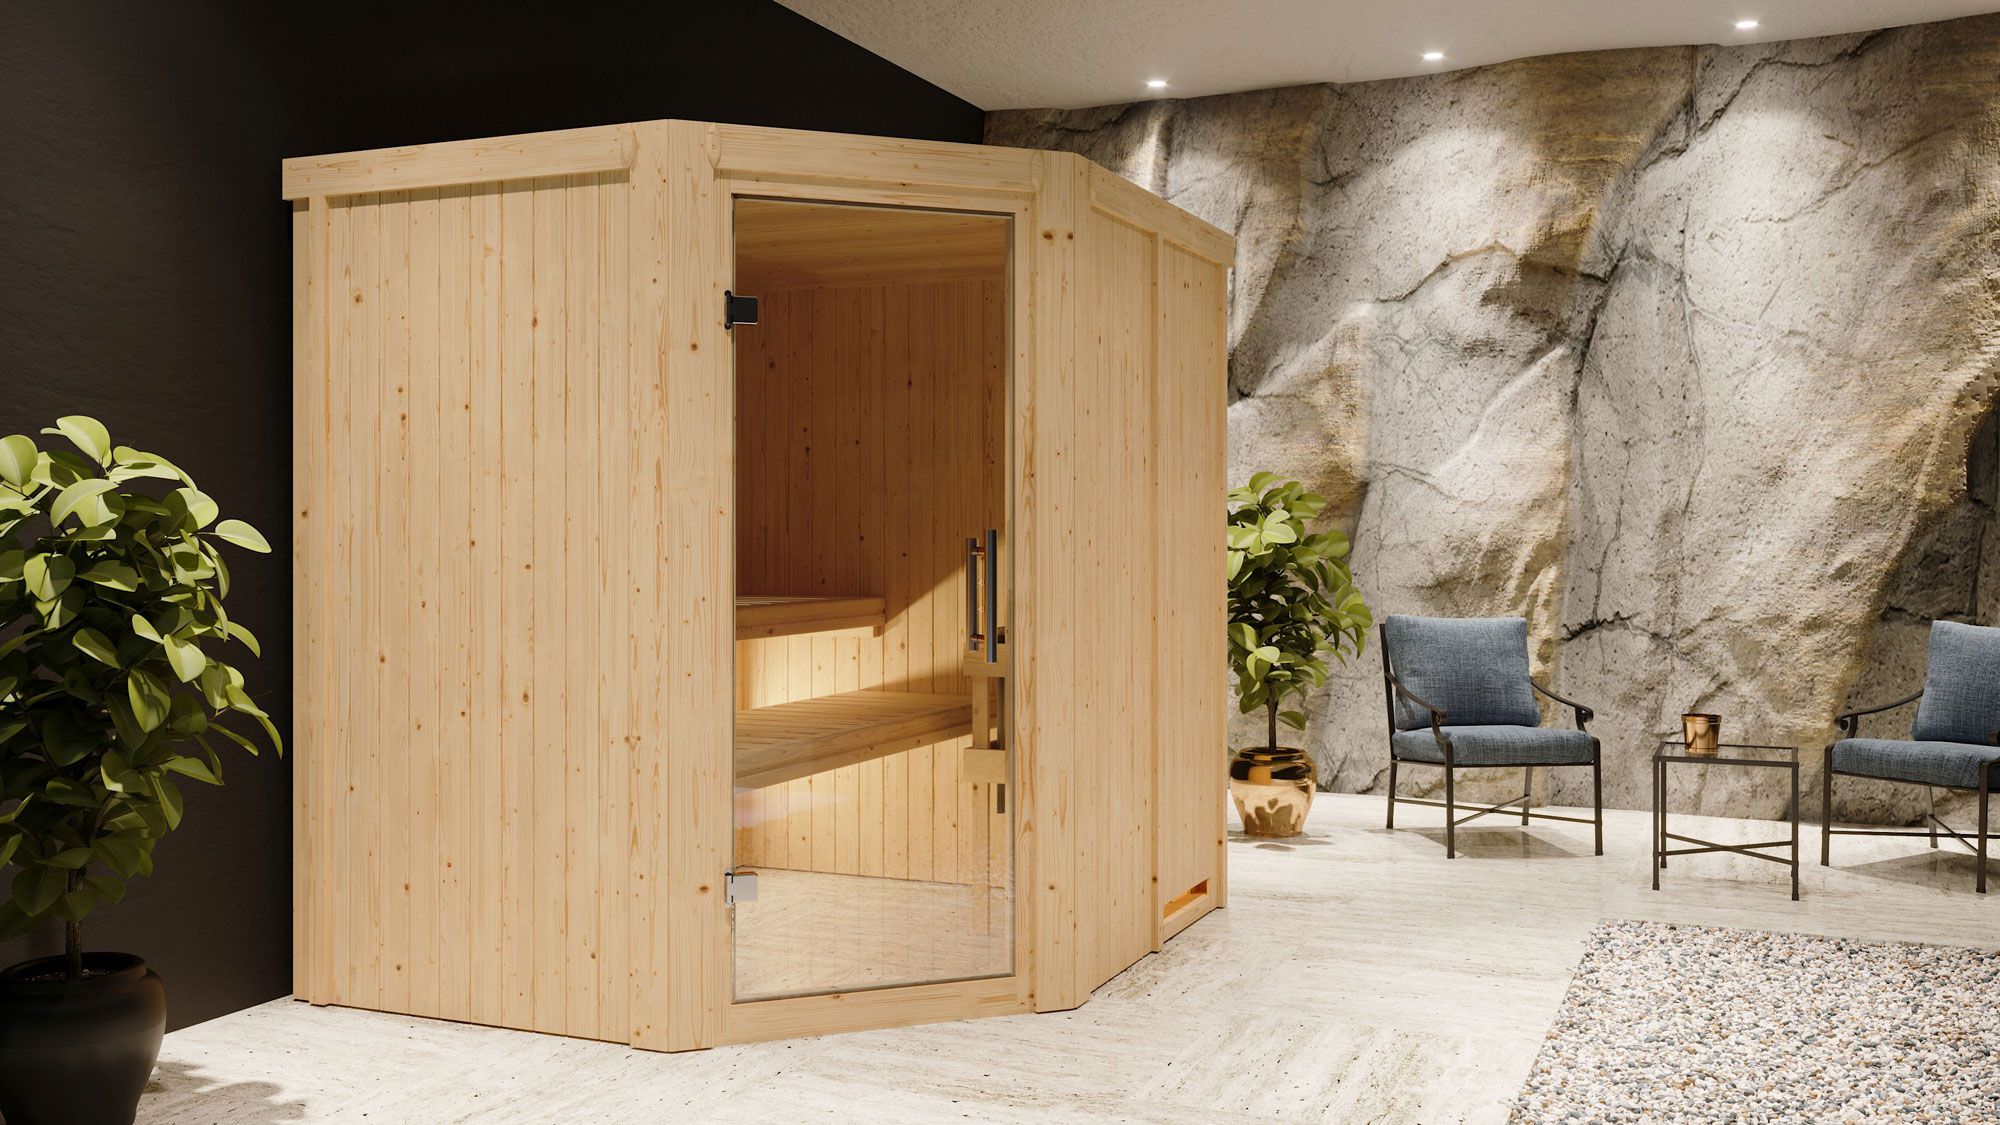 Sauna "Hanko" SET mit Klarglastür & Ofen externe Steuerung easy 9 KW - 196 x 170 x 198 cm (B x T x H)